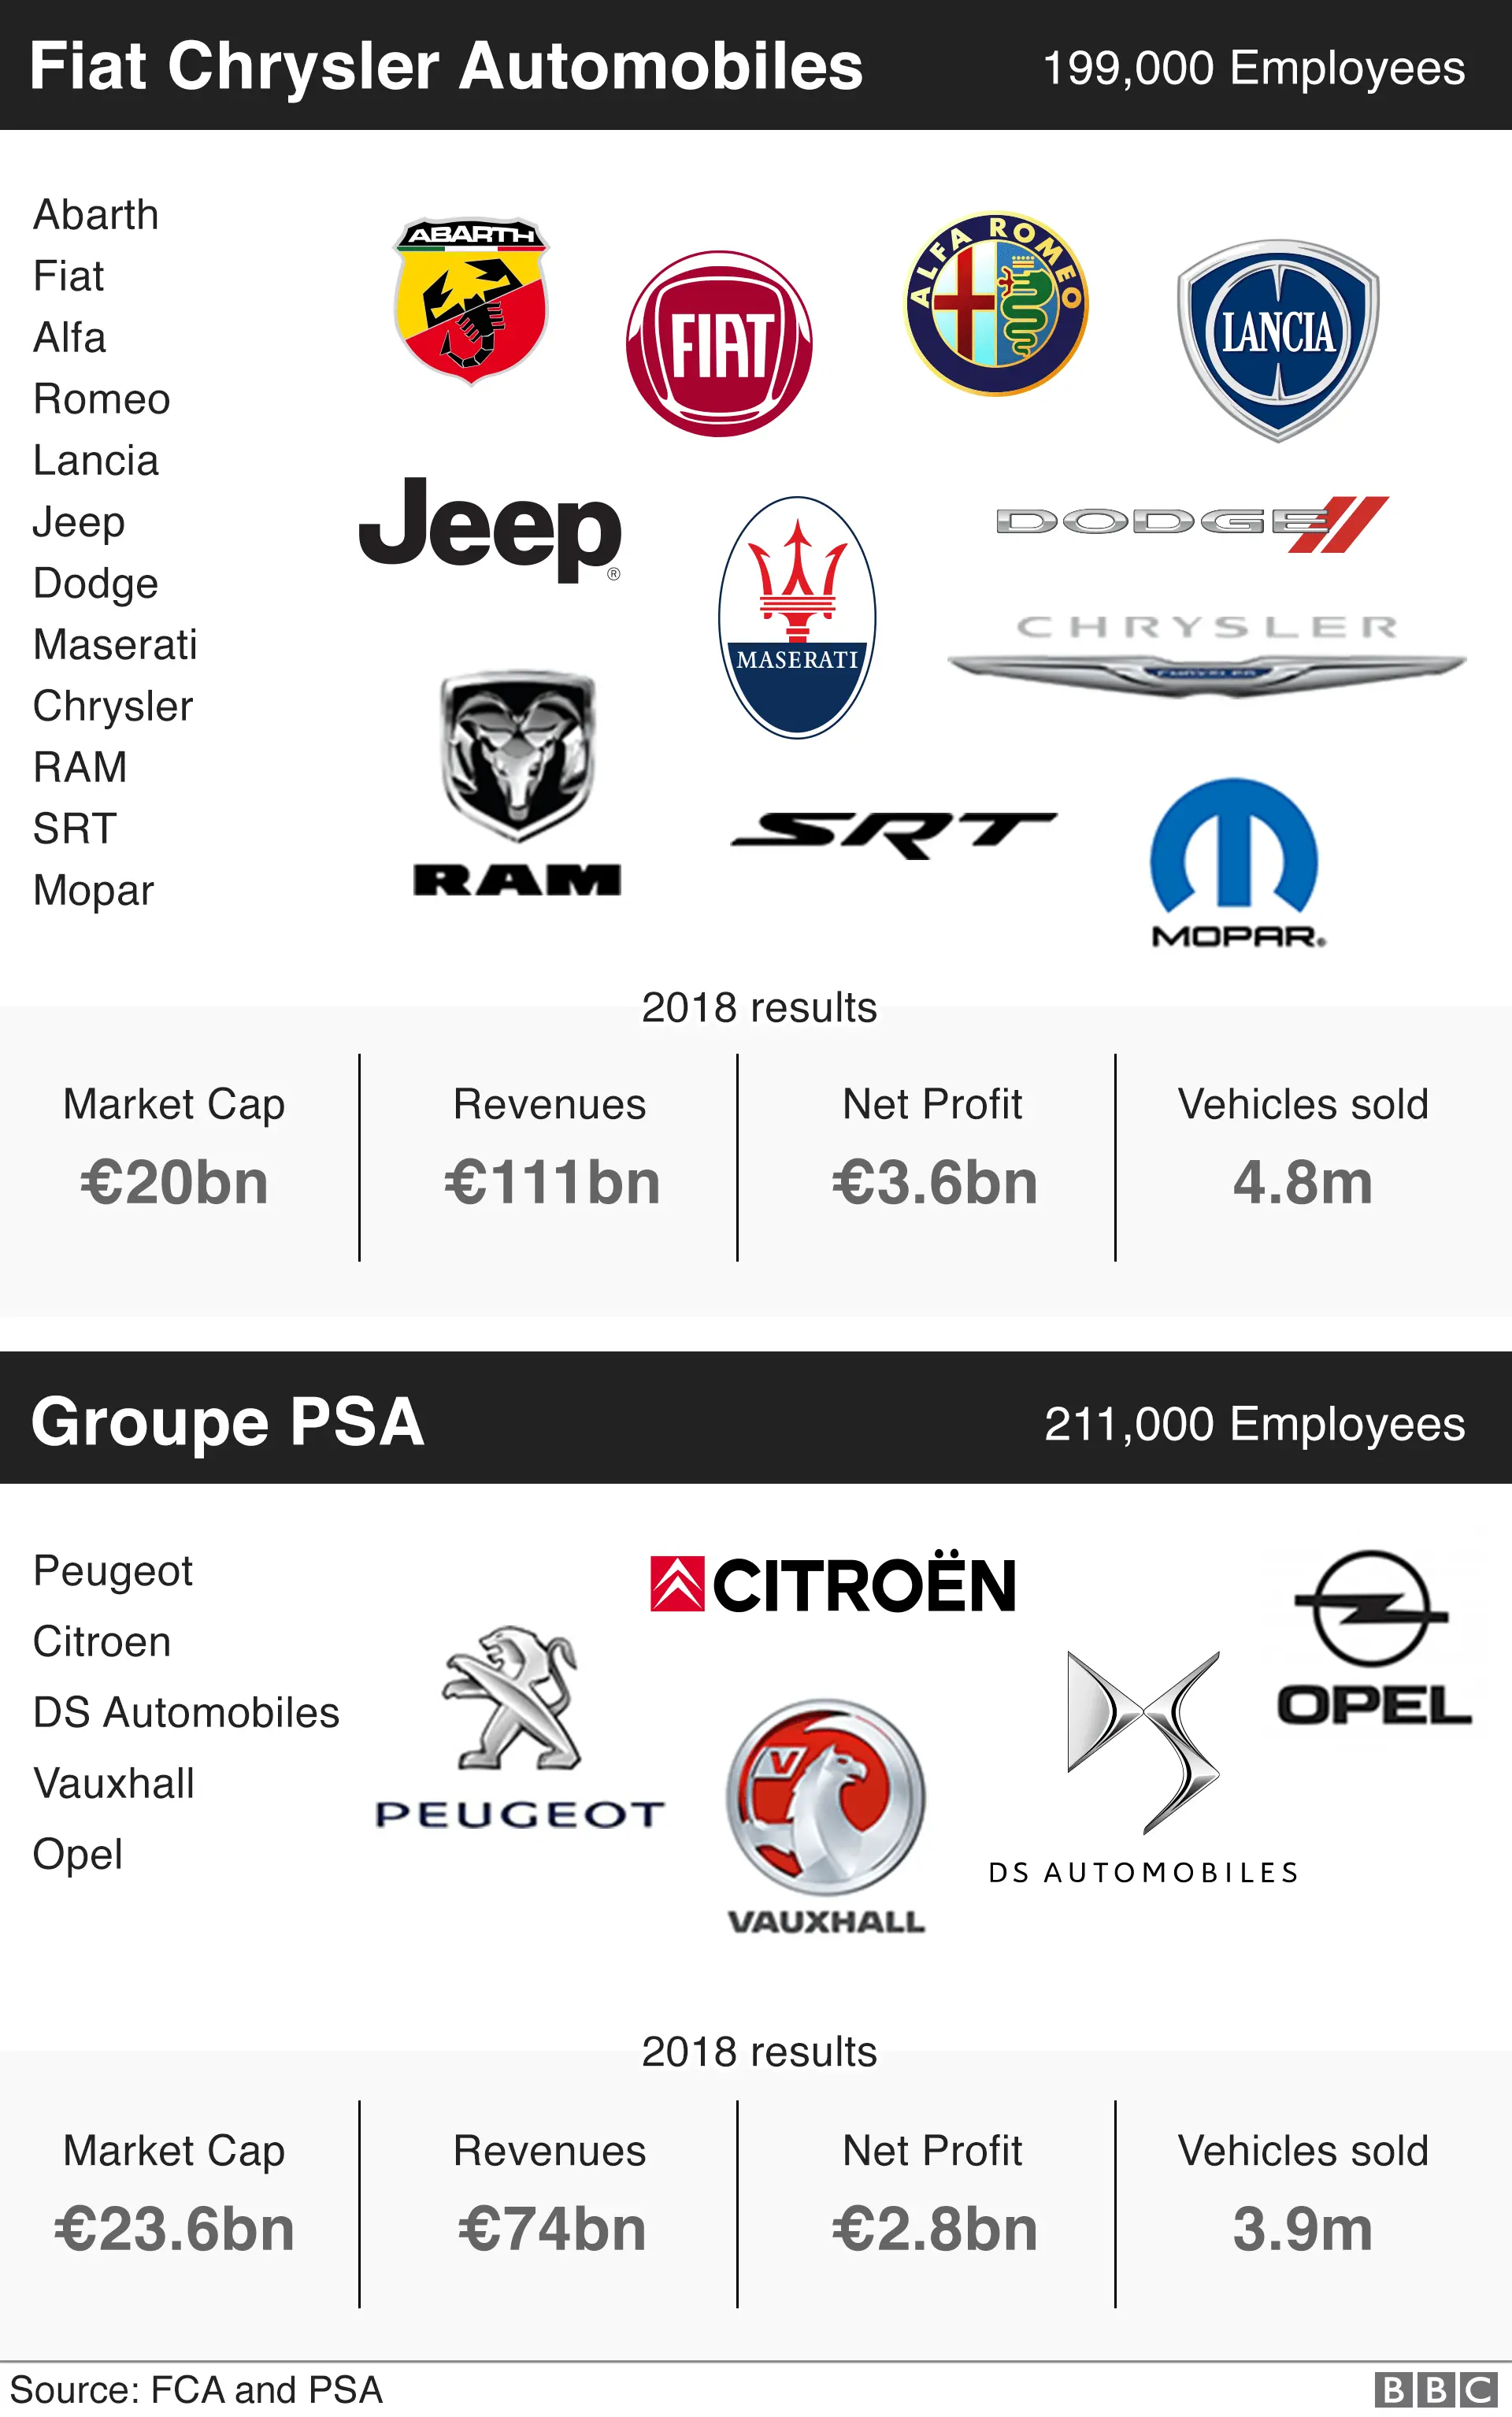 TechTopics - Peugeot, Citroen & Vauxhall represent a large